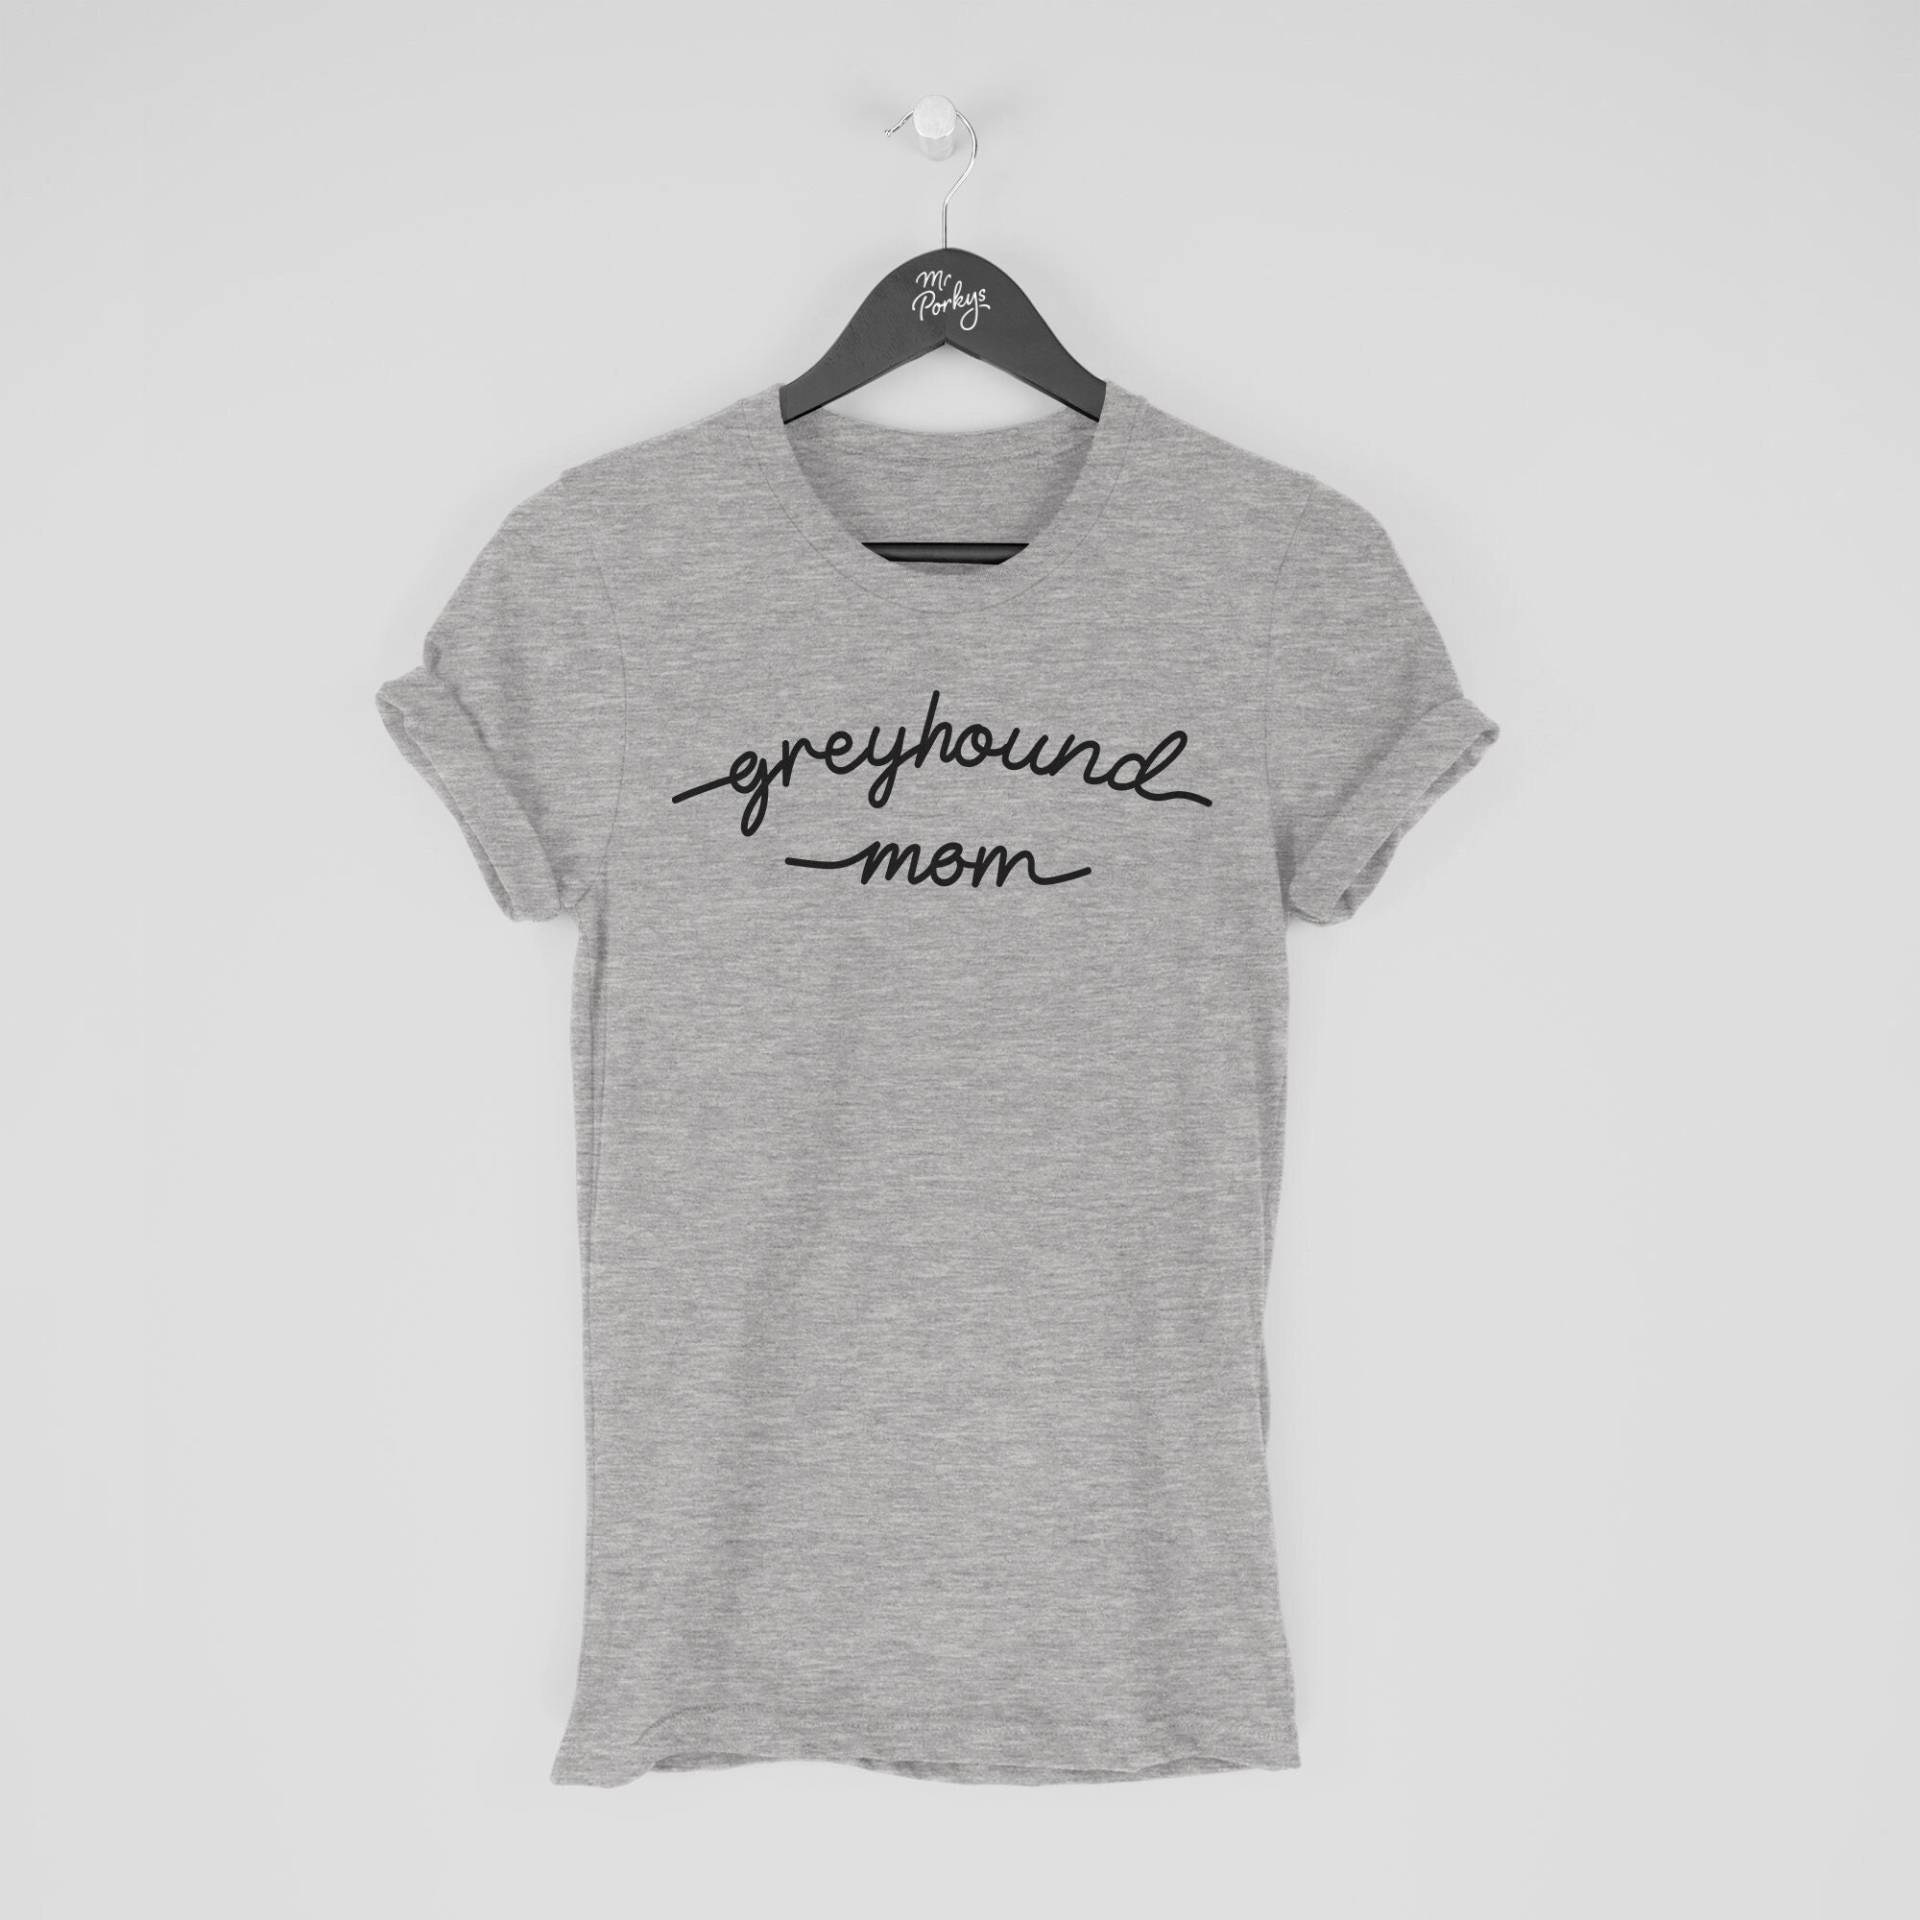 Windhund-T-Shirt, Windhund-Mama-Shirt, Geschenk Für Windhund-Besitzer von MrPorkysGiftShop